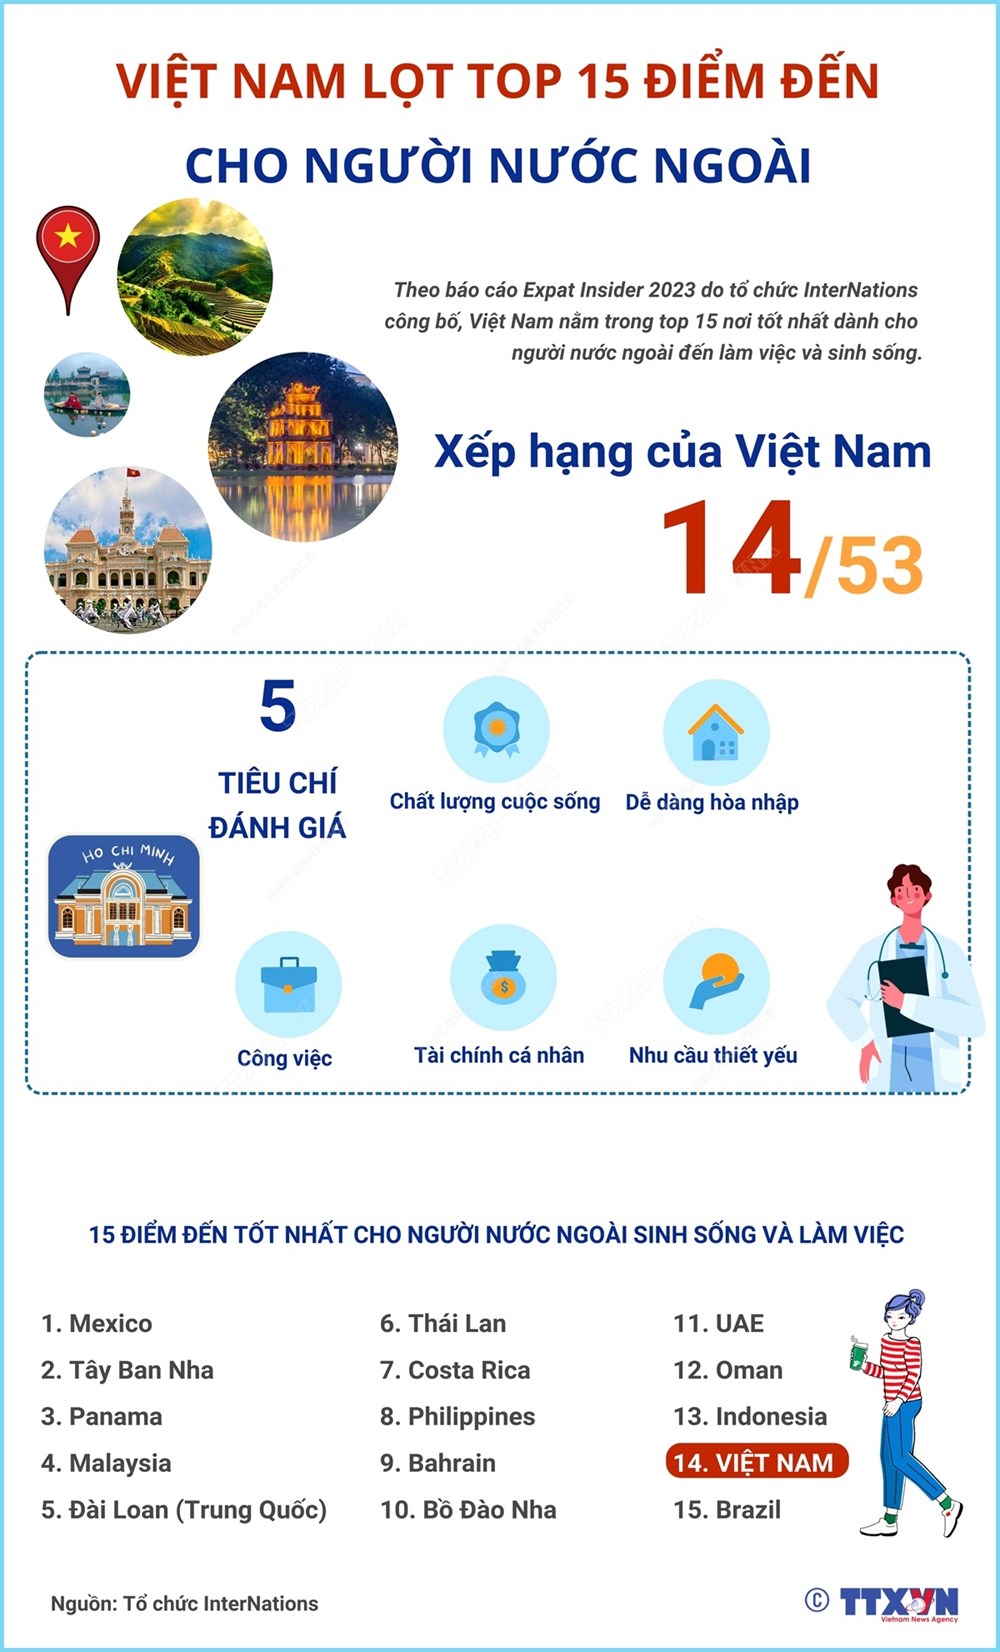 Việt Nam nằm trong top 15 quốc gia đáng sống nhất thế giới - ảnh 2